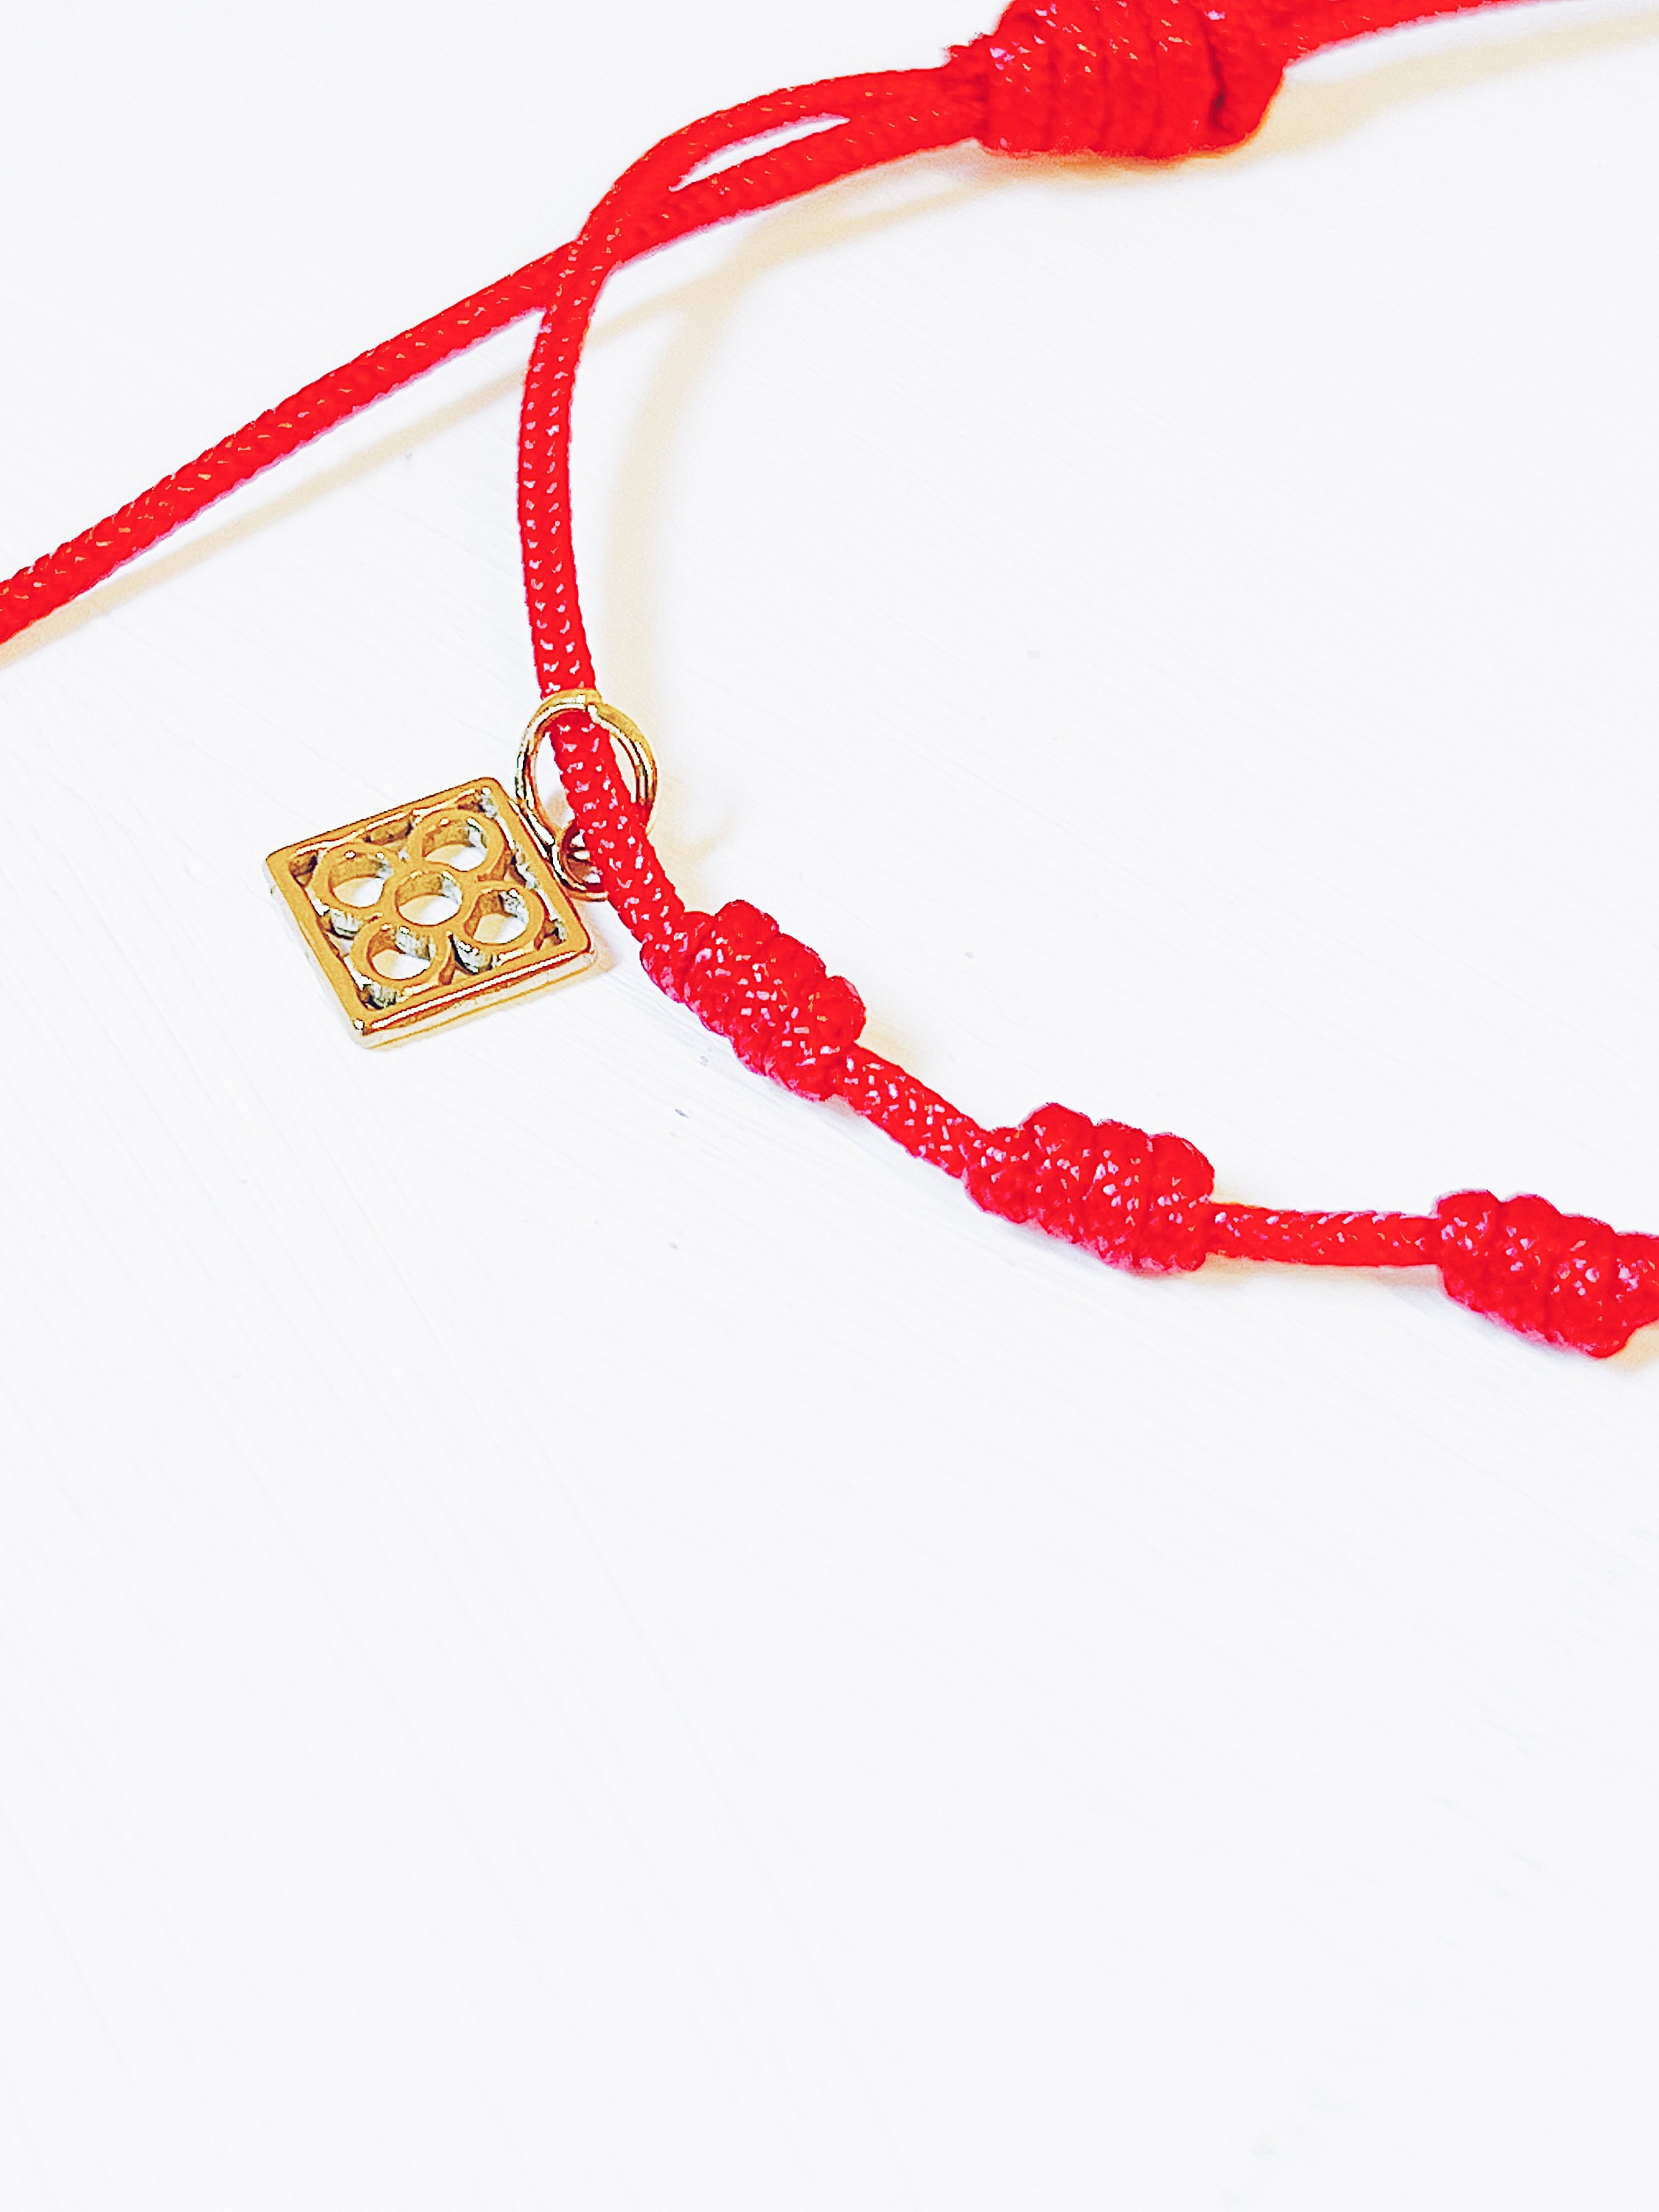 7 Knots Red Protection Bracelet Bracelet of 7 Knots With 